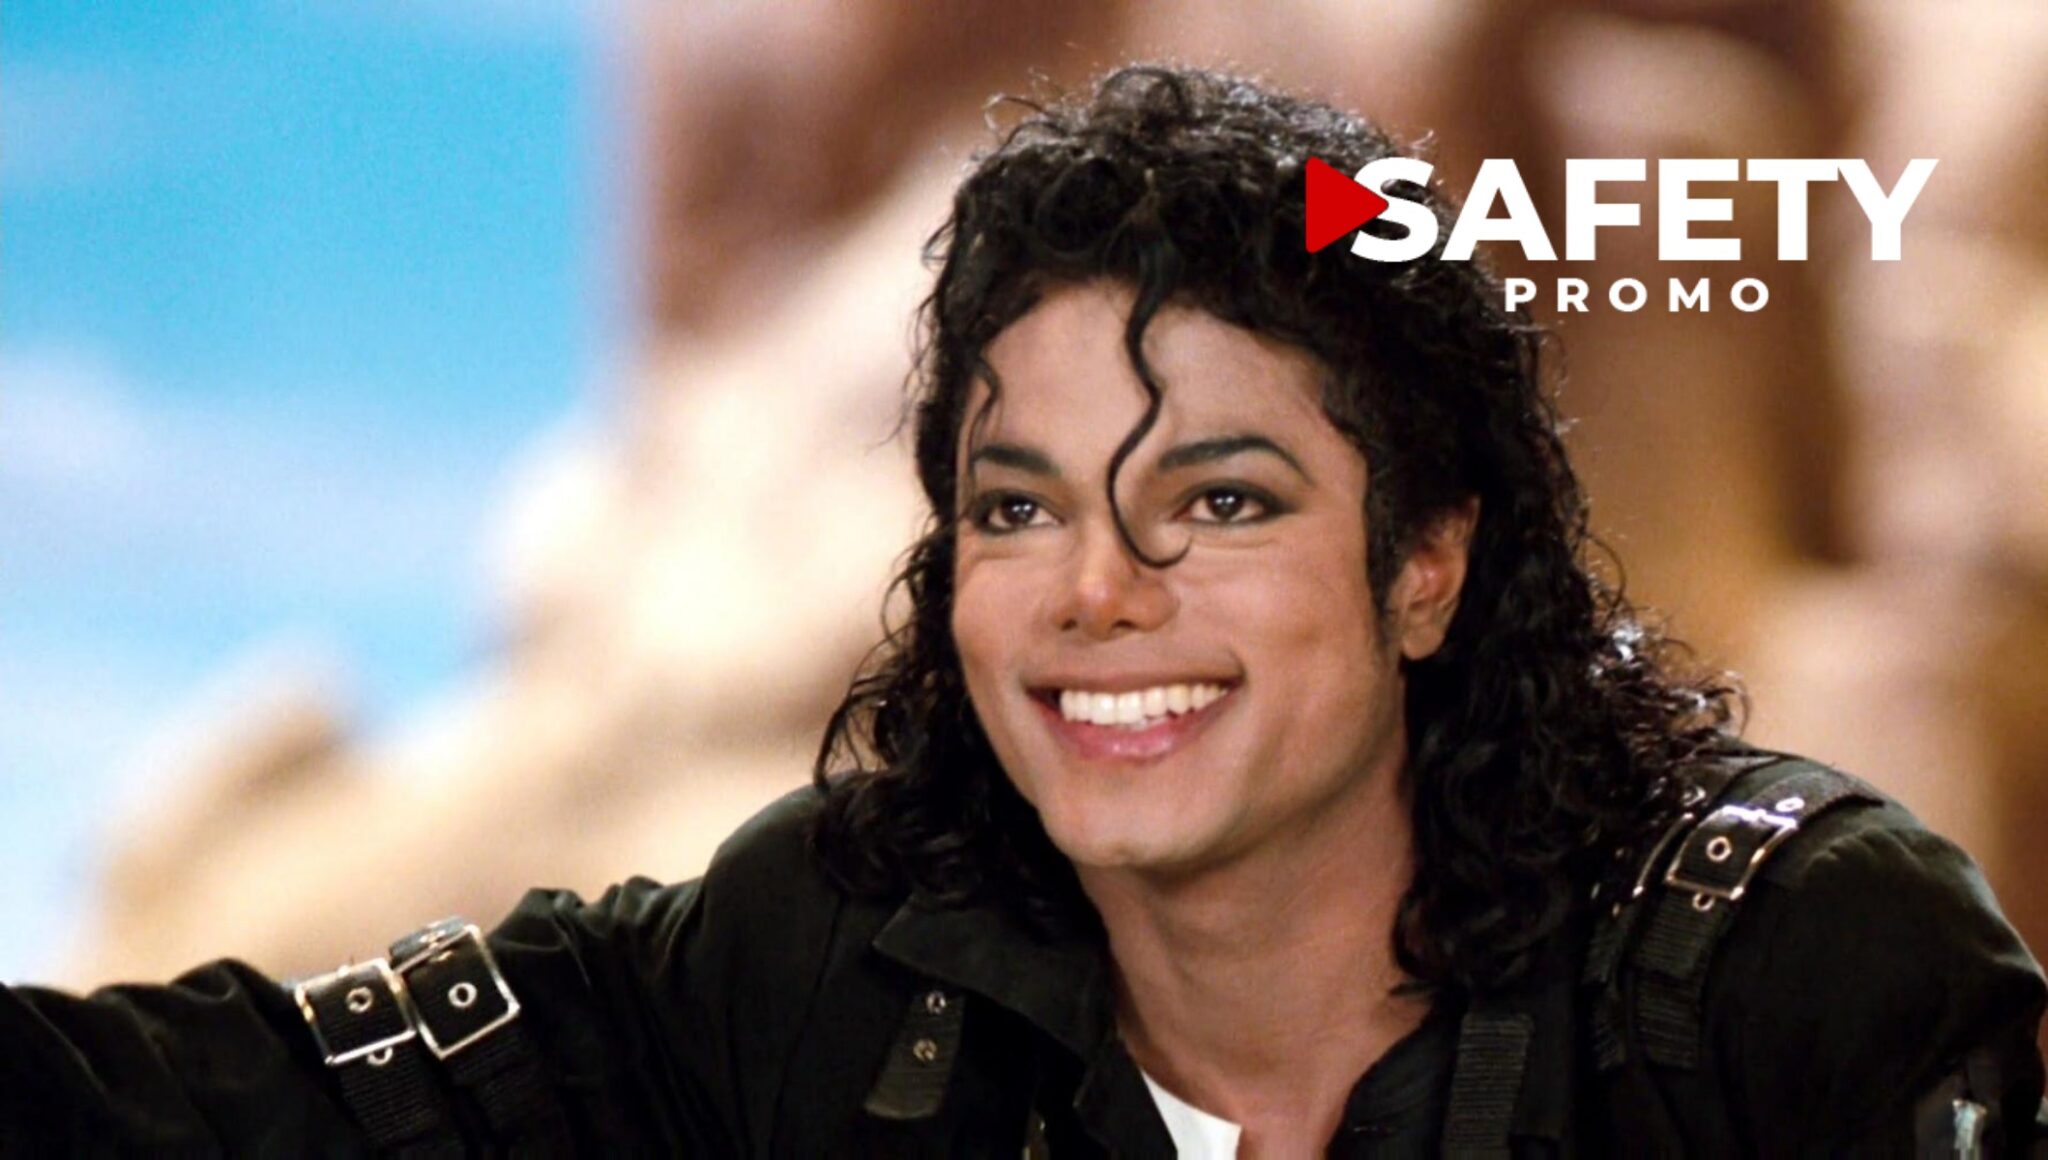 Trois chansons de Michael Jackson retirées des plateformes de streaming par Sony